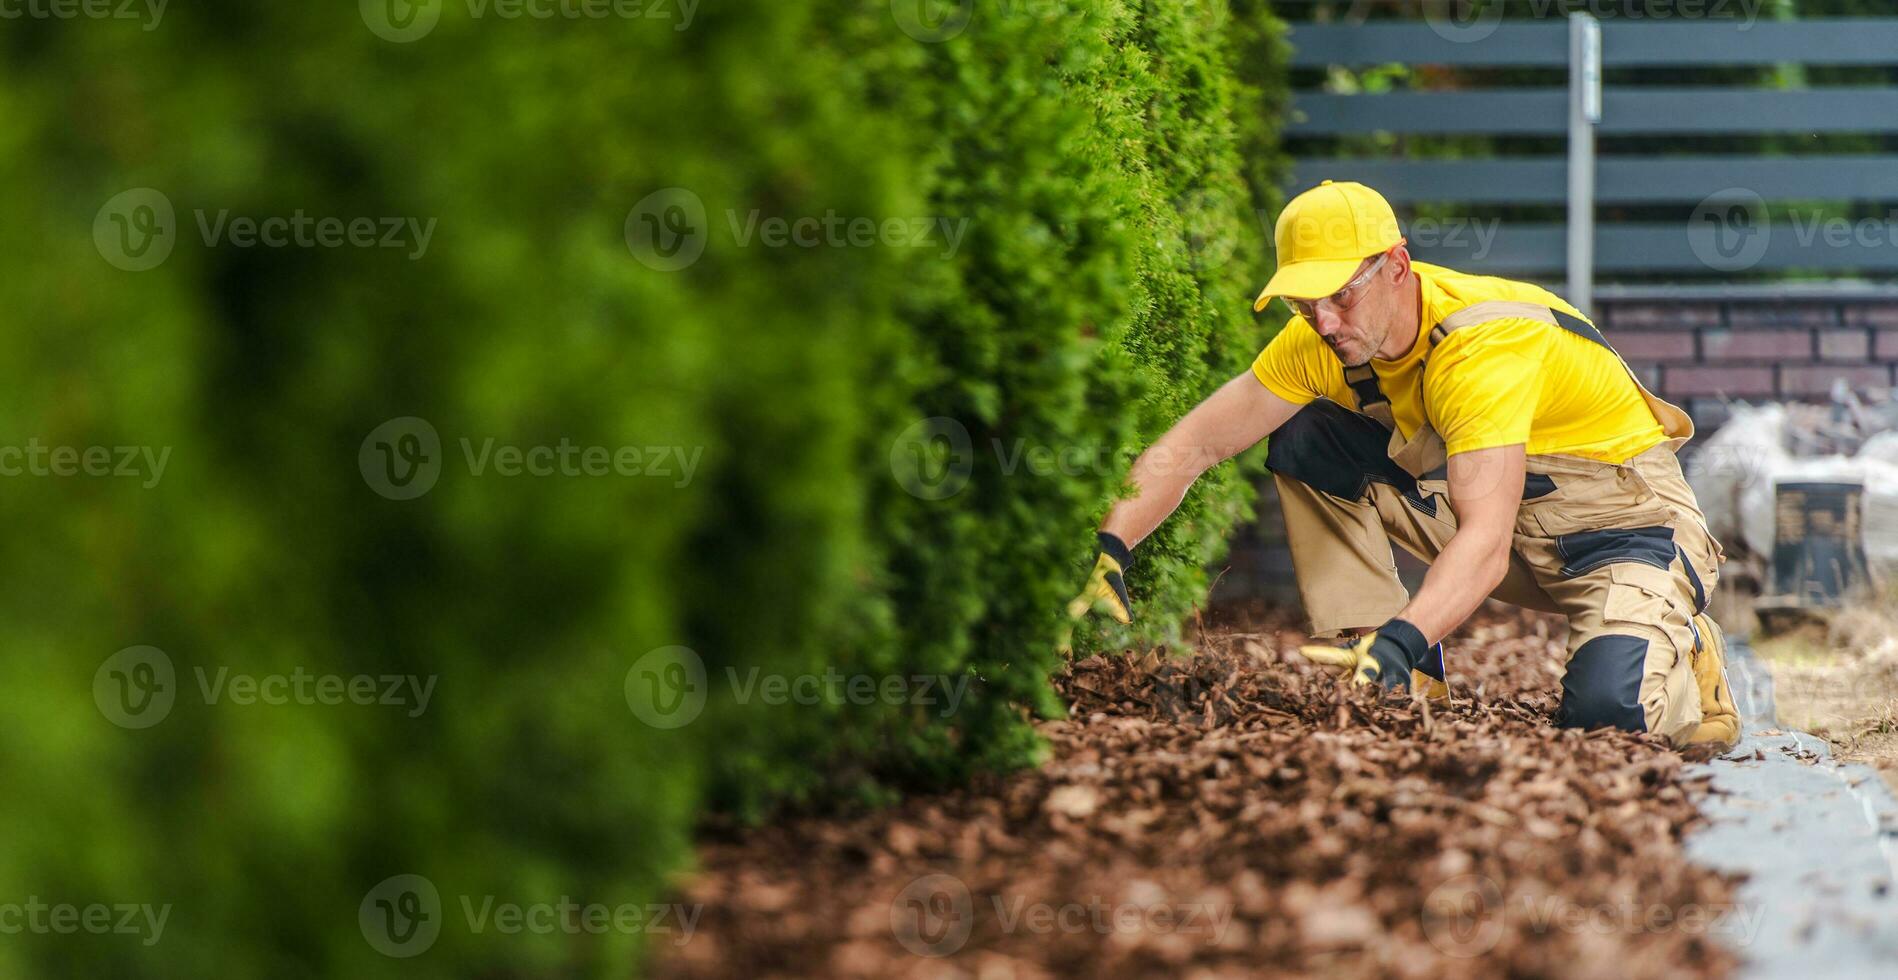 profesional jardinero arreglando el jardín pajote en el frente yarda foto